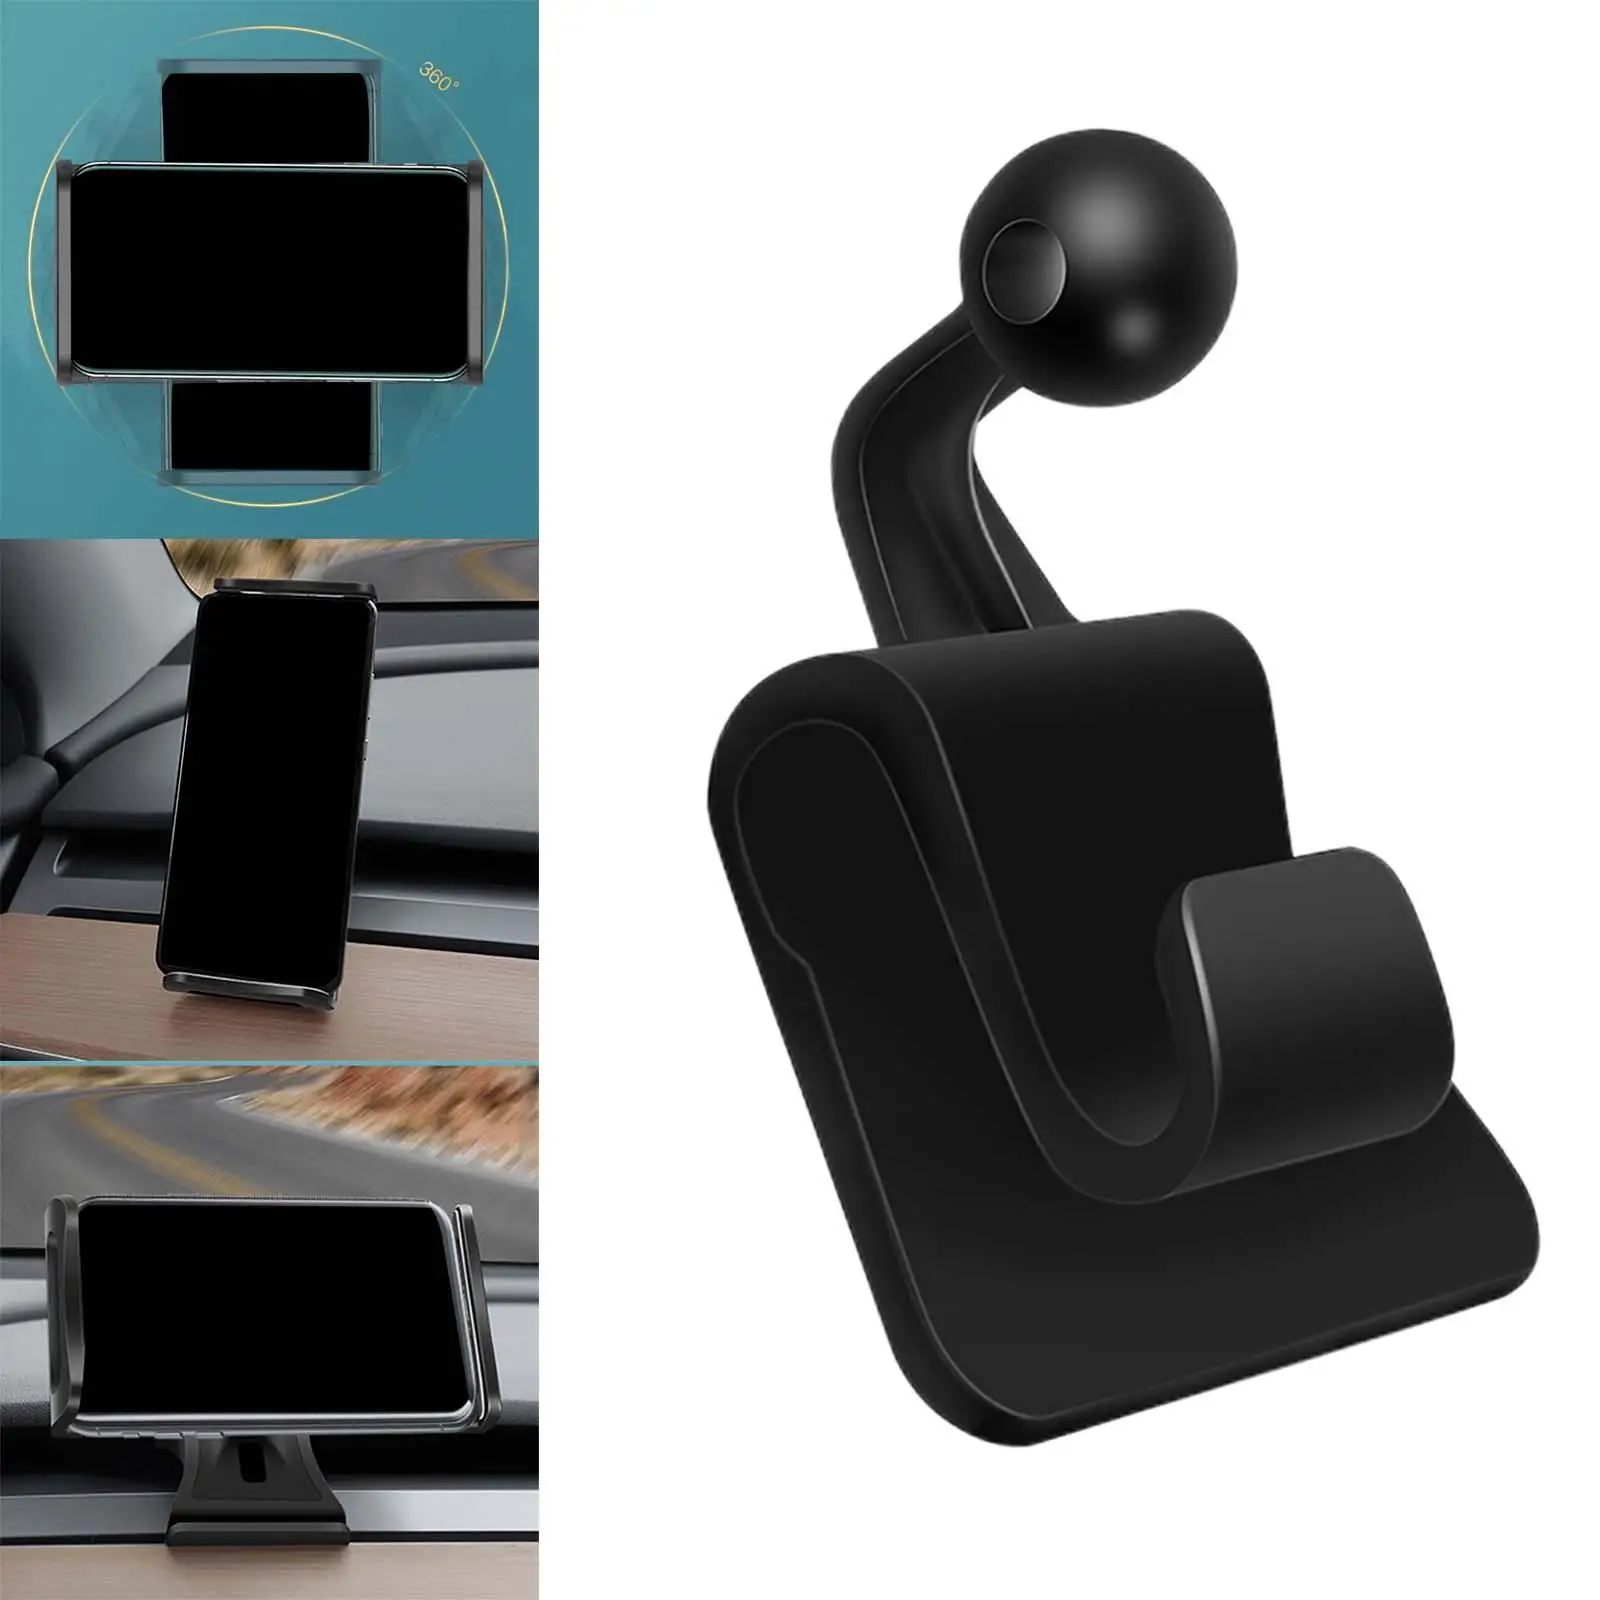  Headrest Mount Tablet Holder 360 Rotating Adjustable Backseat Seat Cellphone Holder for /Y